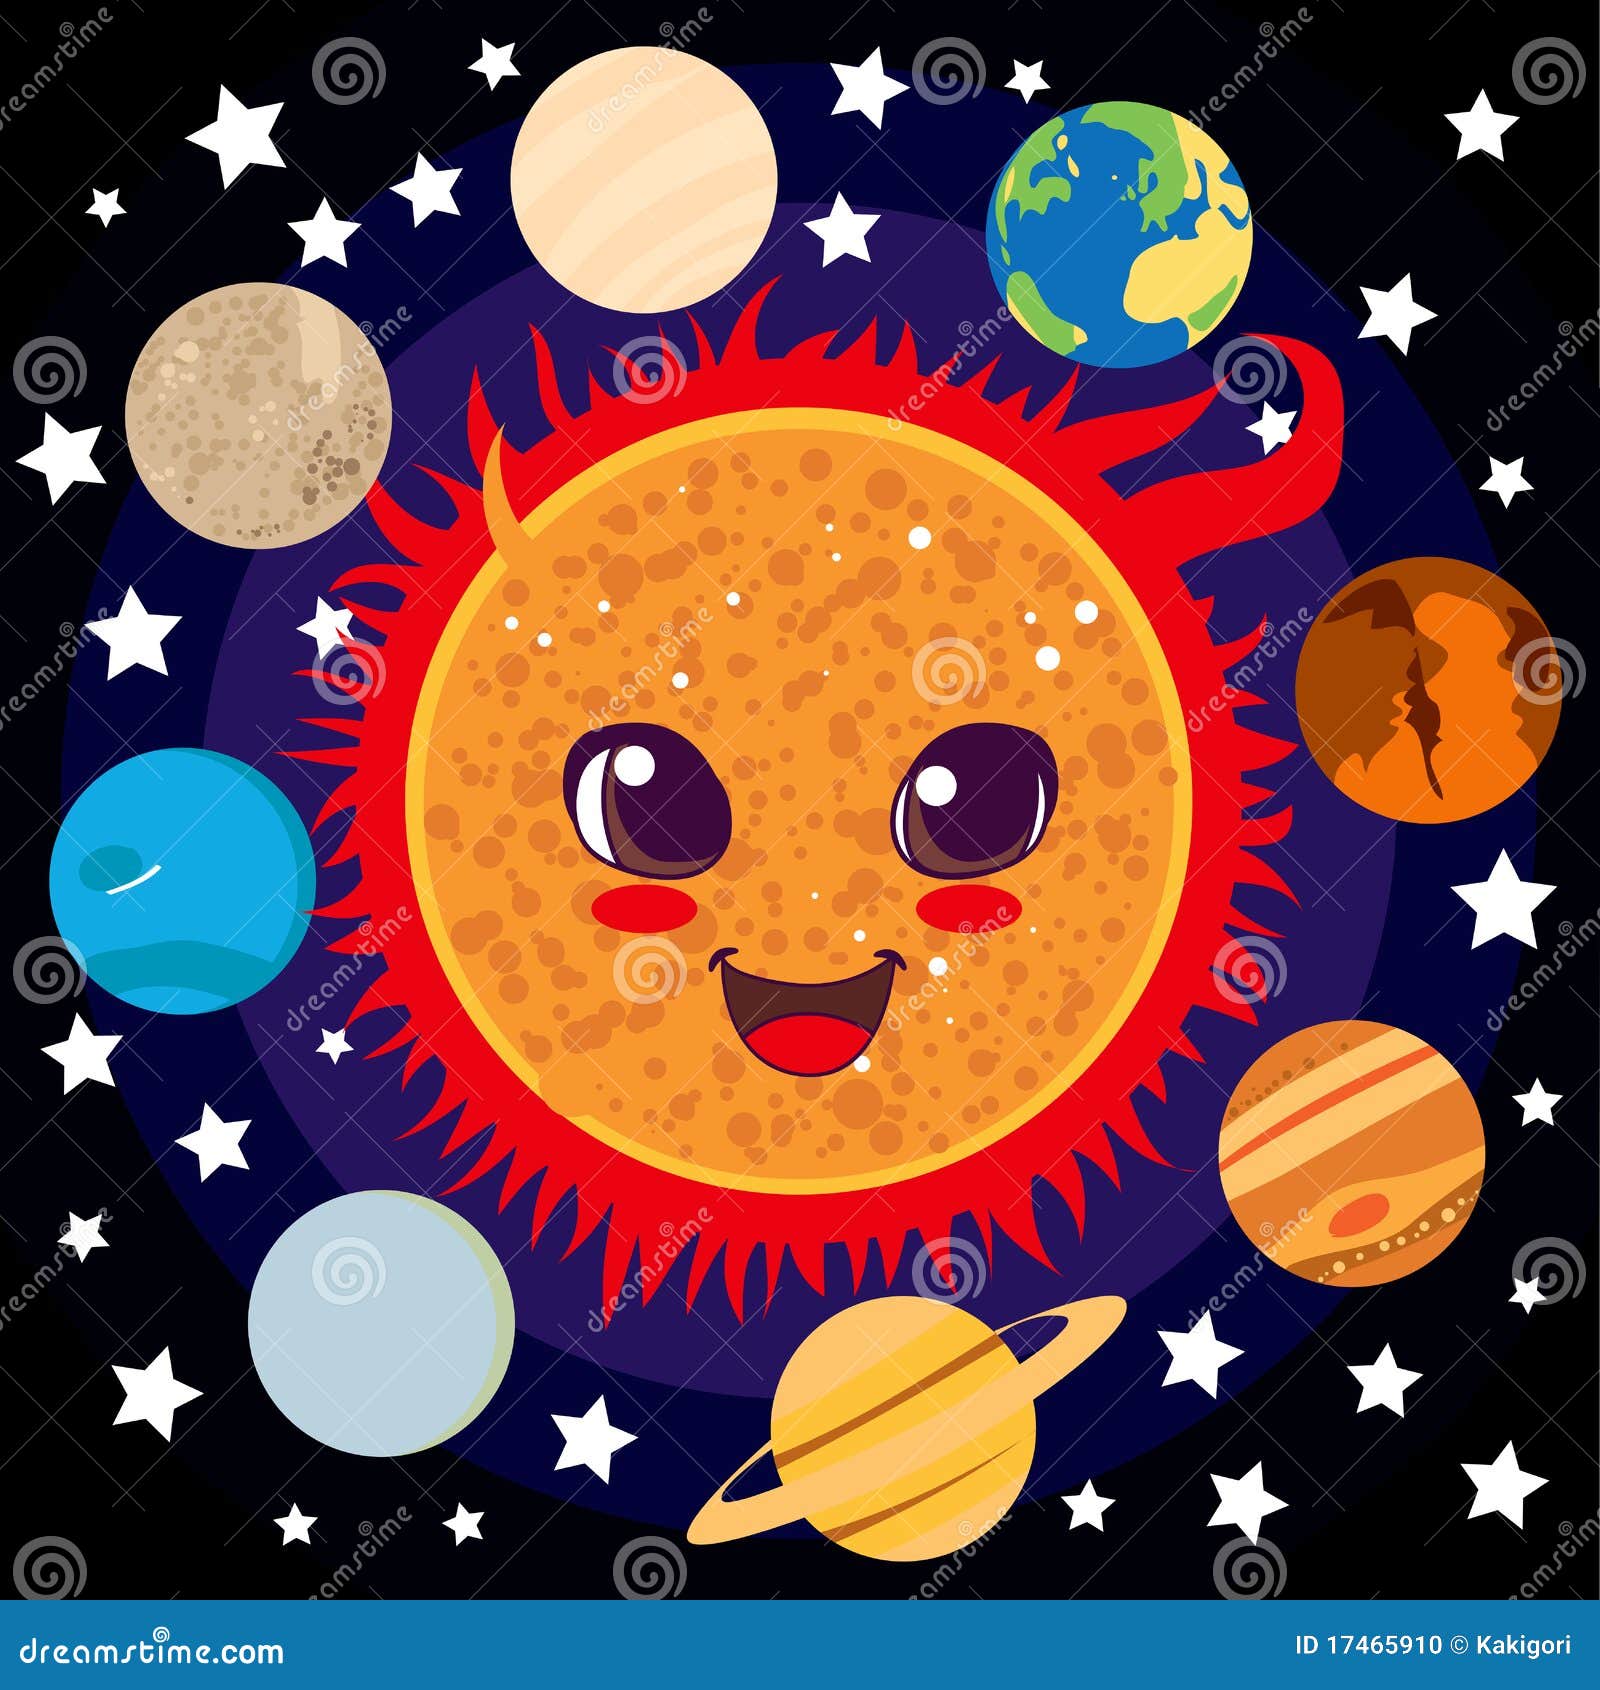 Солнце картинка для детей космос. Солнце в космосе для детей. Картина солнце в космосе для детей. Космическое солнце для детей. Изображение солнца в космосе для детей.